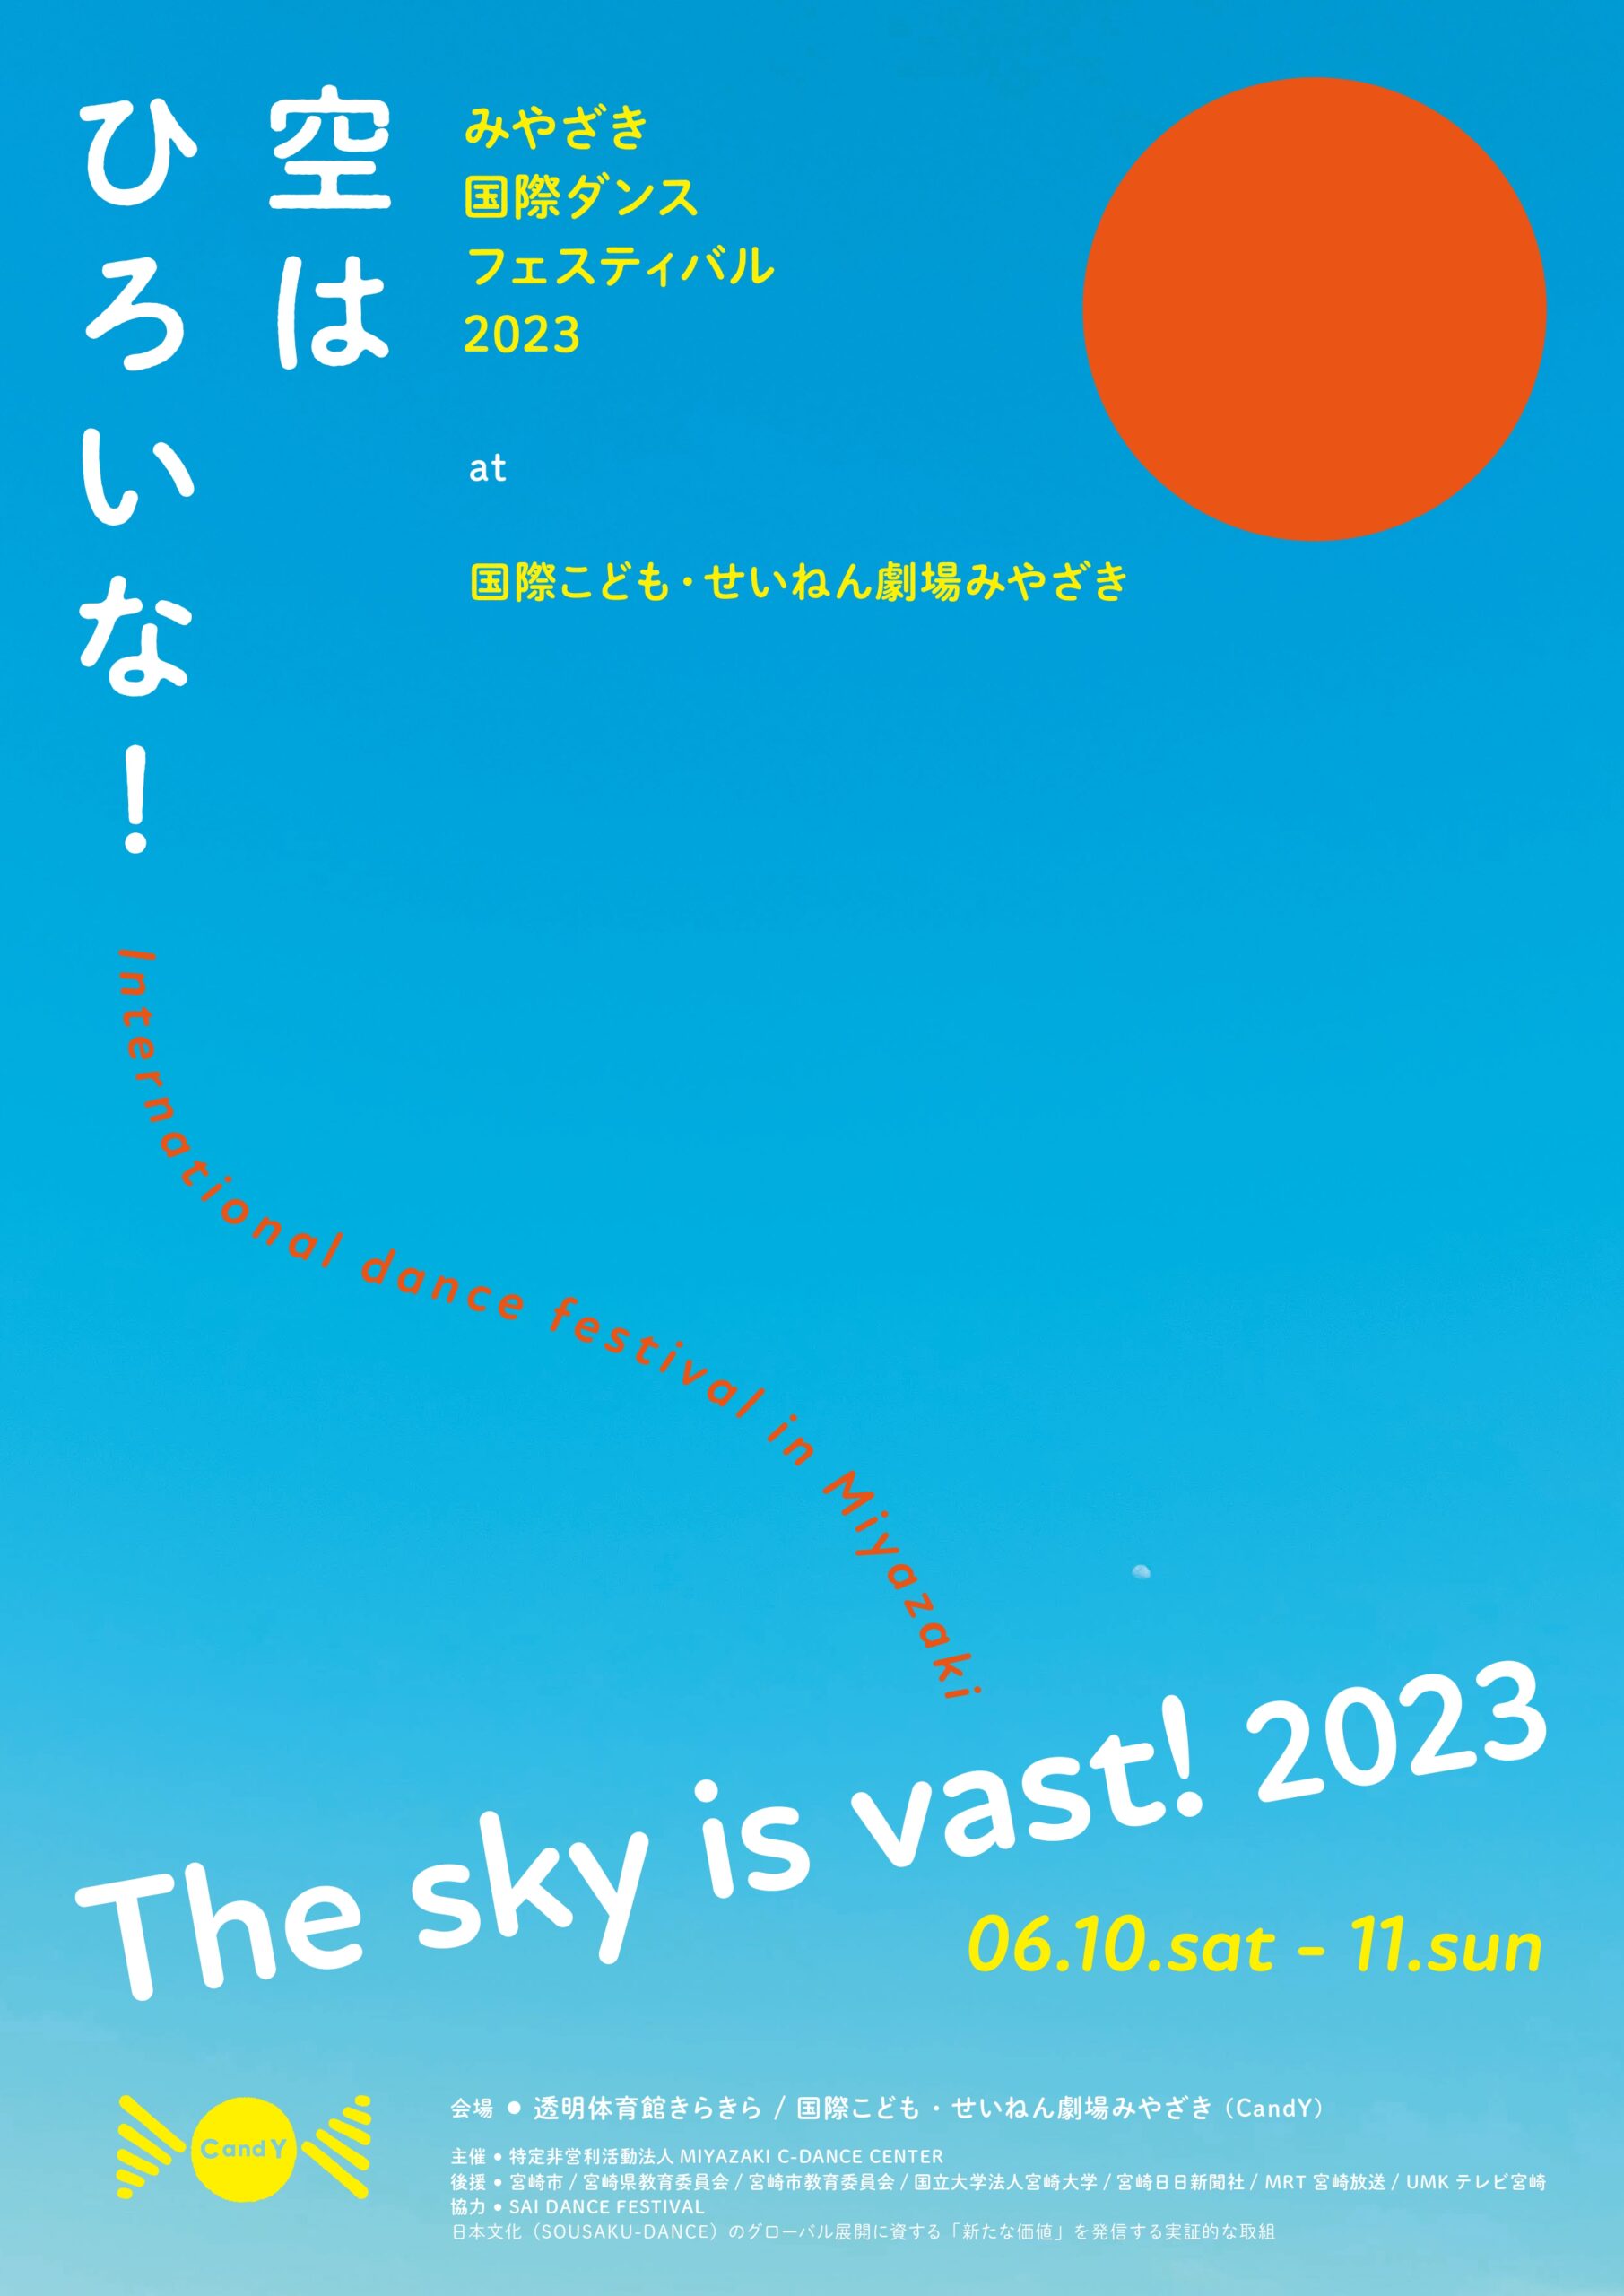 空はひろいな！〜みやざき国際ダンスフェスティバル 2023 The sky is vast！〜International Dance Festival in Miyazaki